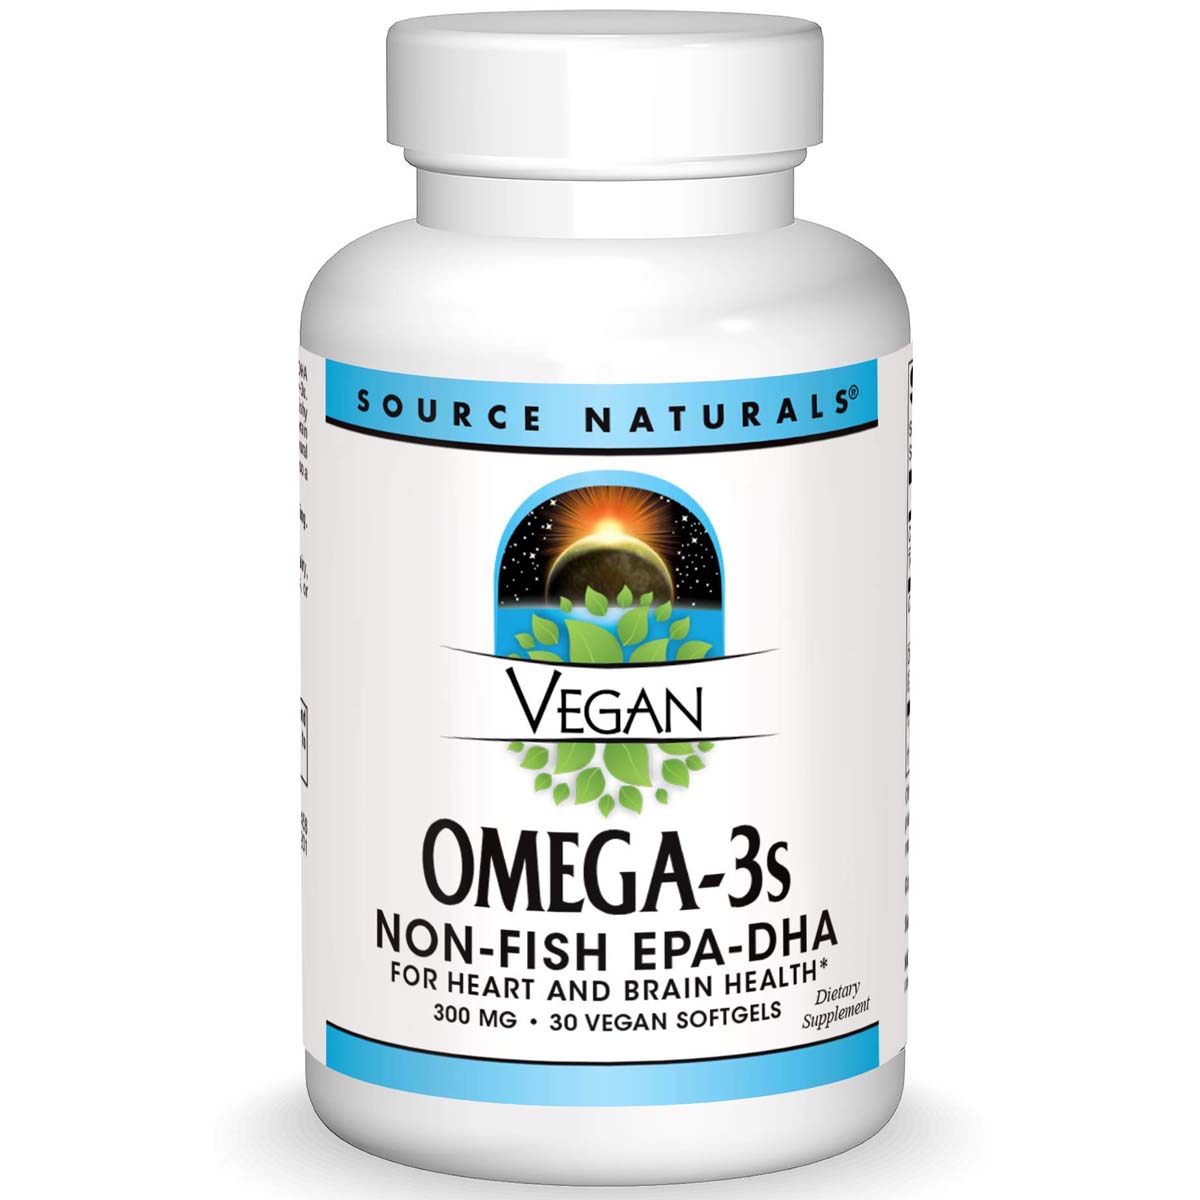 Source Naturals Vegan Omega-3 Non-Fish, 300 mg, 30 Vegan Softgels